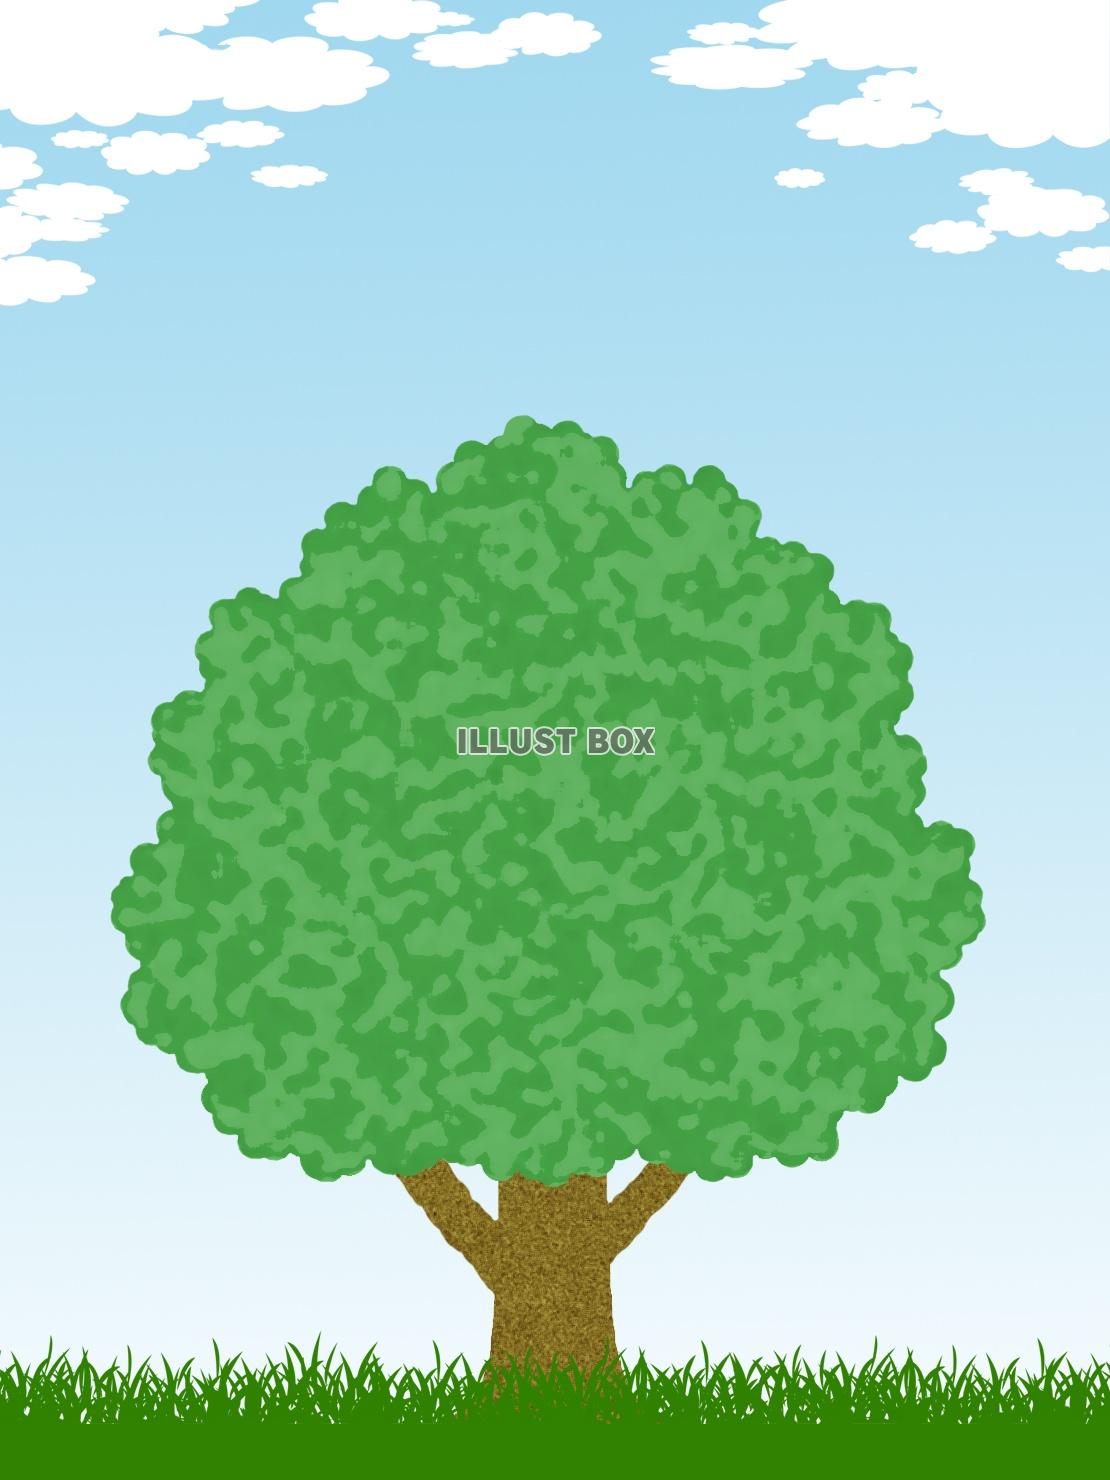 無料イラスト 樹木風景画壁紙シンプル背景素材イラスト